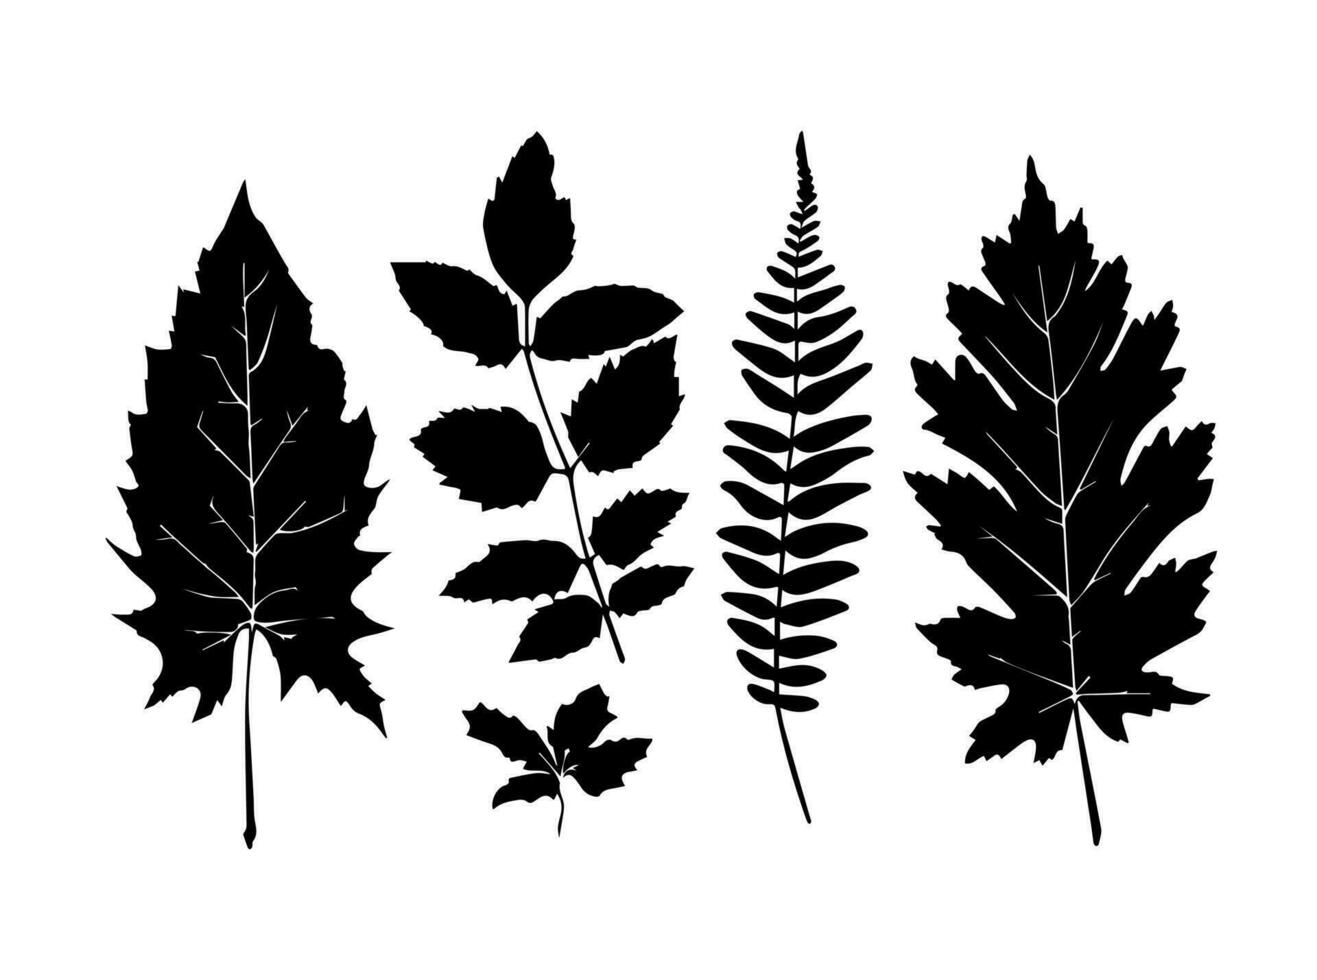 conjunto de negro siluetas de hojas y flores vector ilustración.